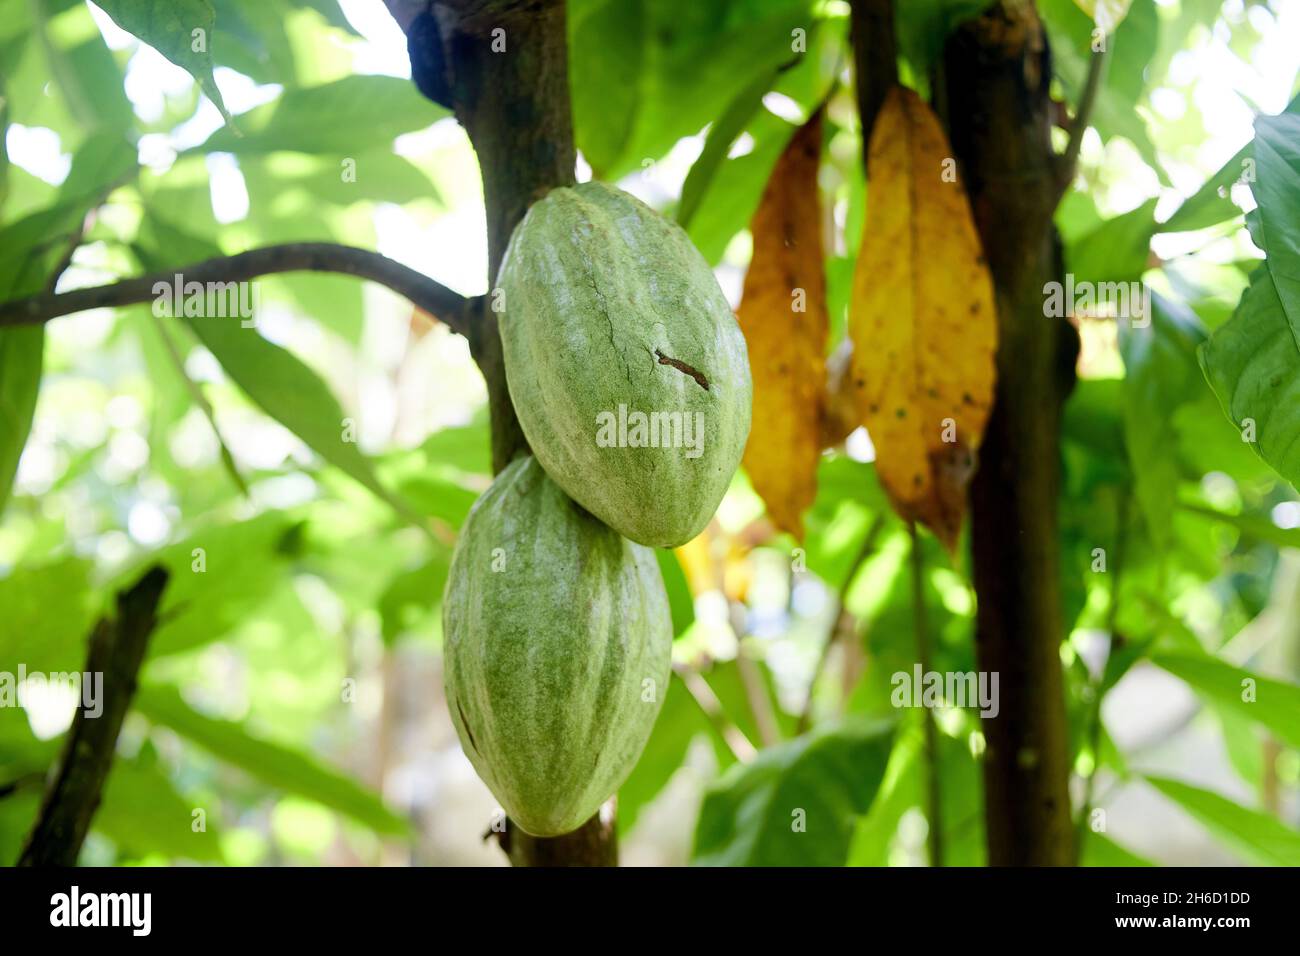 Fruits de cacao fres bio sur branche d'arbre Banque D'Images